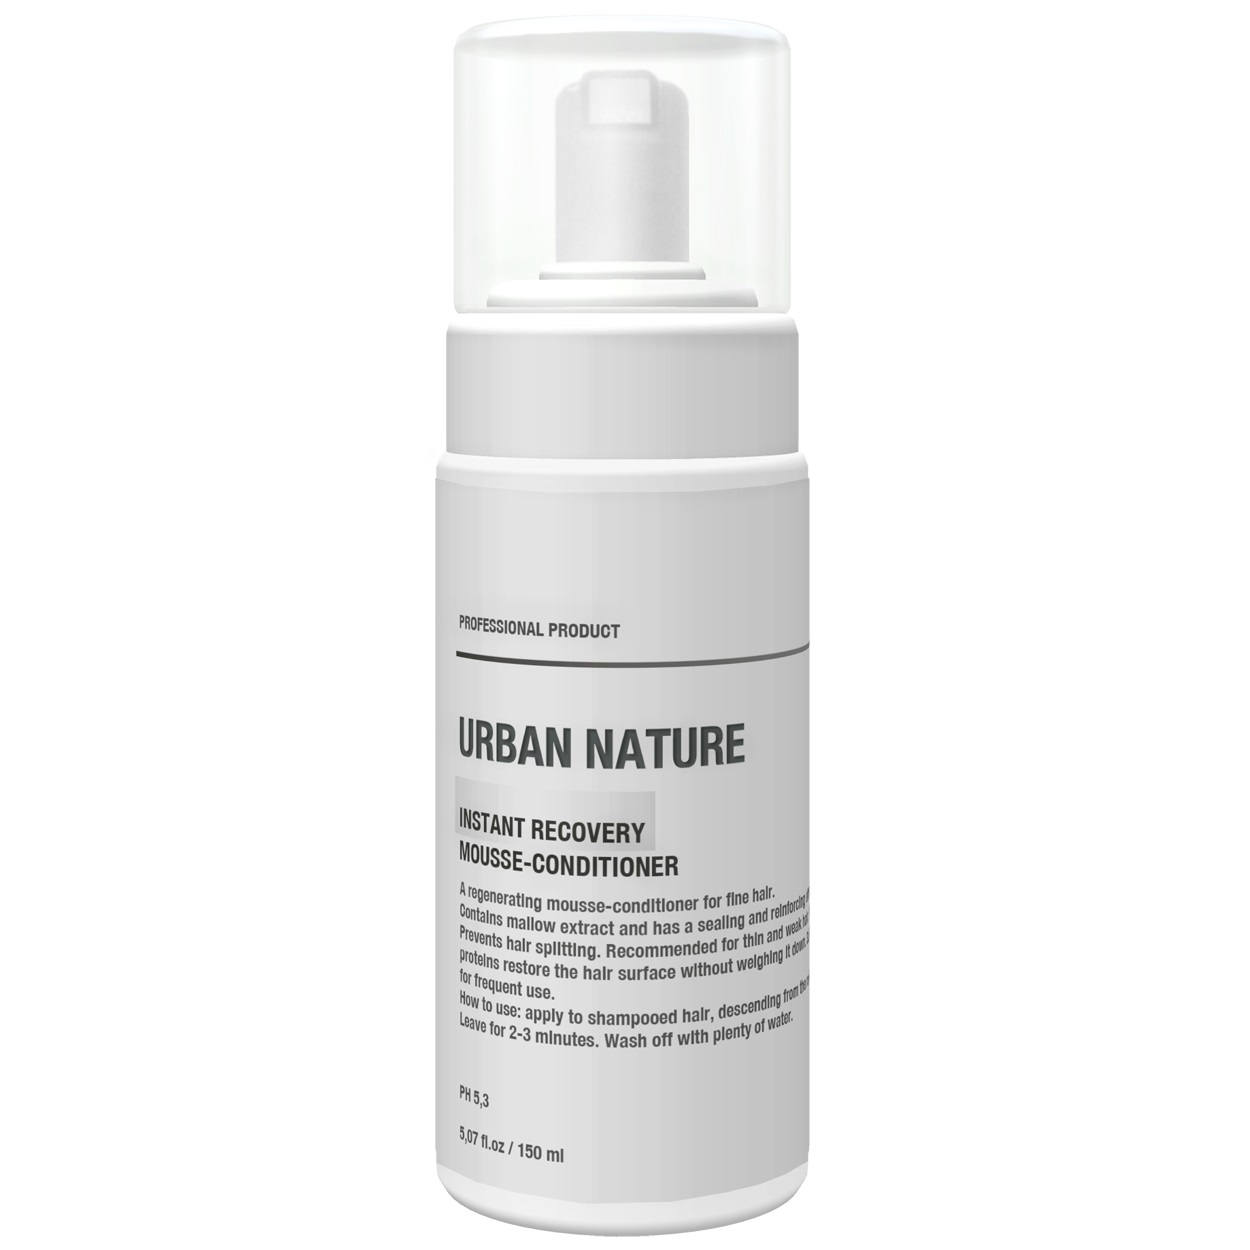 Urban Nature Кондиционер-мусс для тонких волос Мгновенное восстановление, 150 мл (Urban Nature, Instant Recovery)